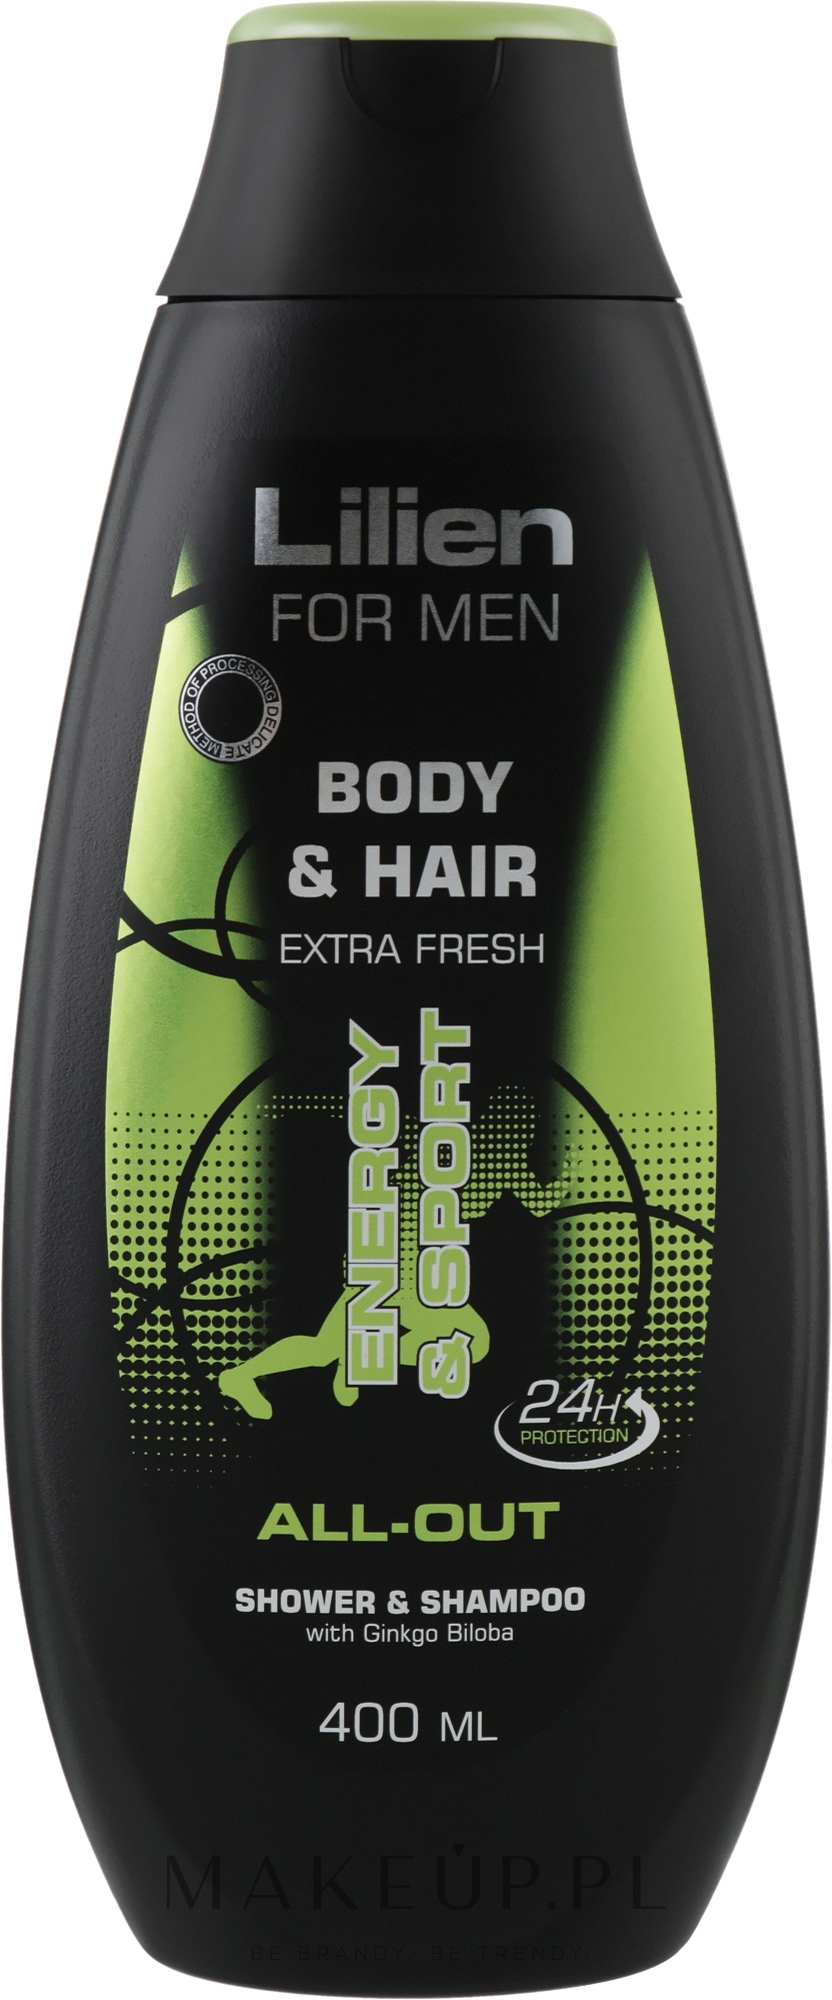 Żel pod prysznic i szampon do włosów dla mężczyzn - Lilien For Men Body & Hair All-Out Shower & Shampoo — Zdjęcie 400 ml